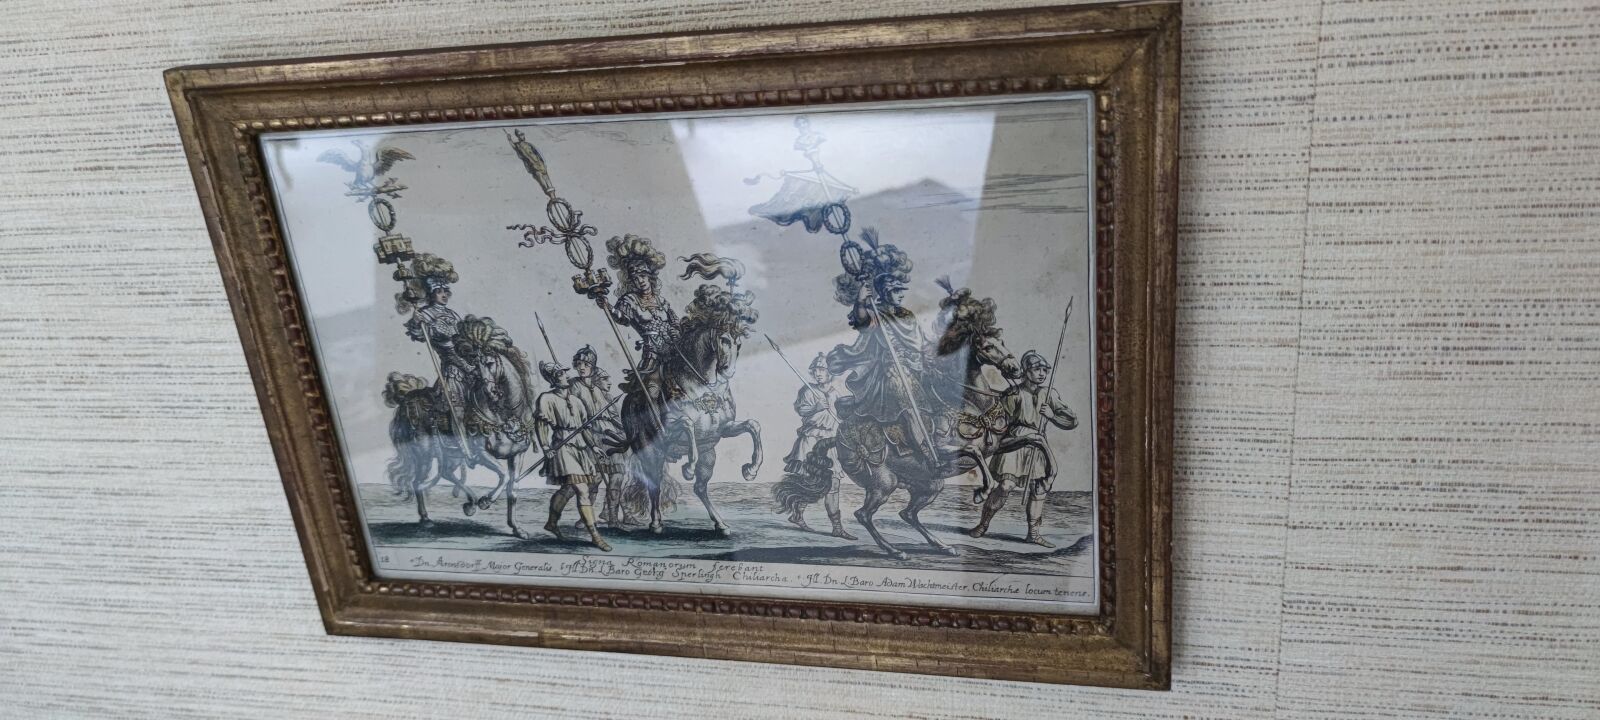 Null 彩色雕版画。
"三骑士"。 
17世纪。 
20 x 33 cm